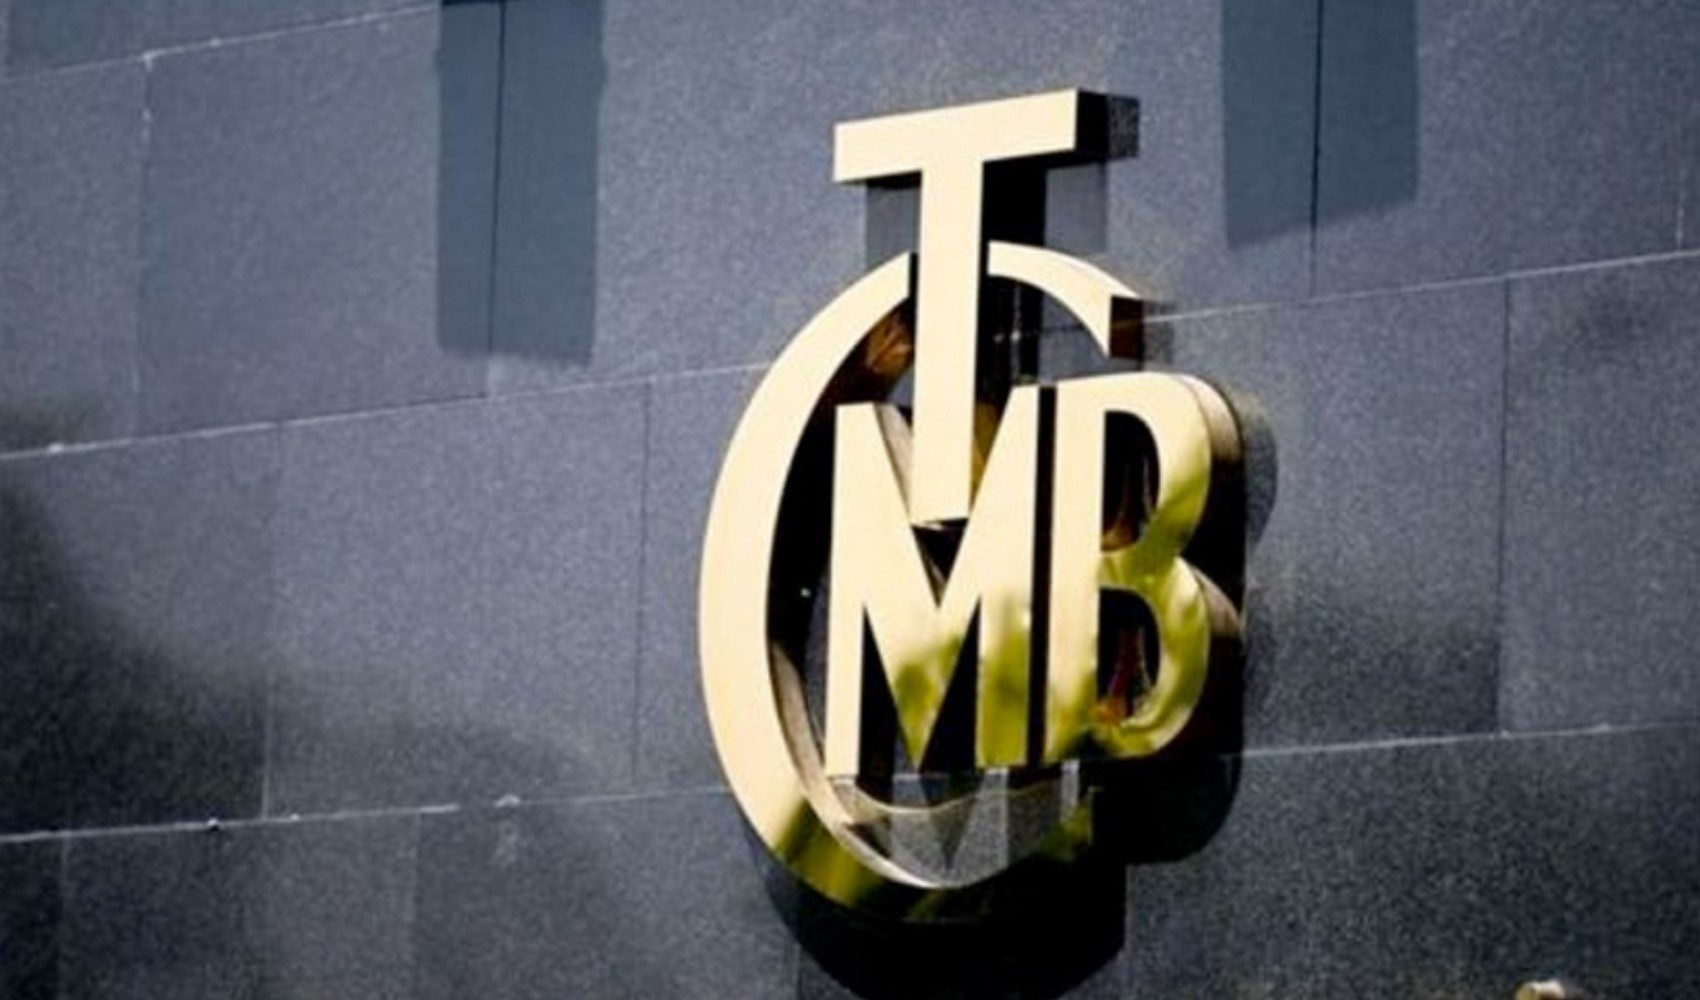 TCMB'den genel kurul adımı: 'Normalleşme'